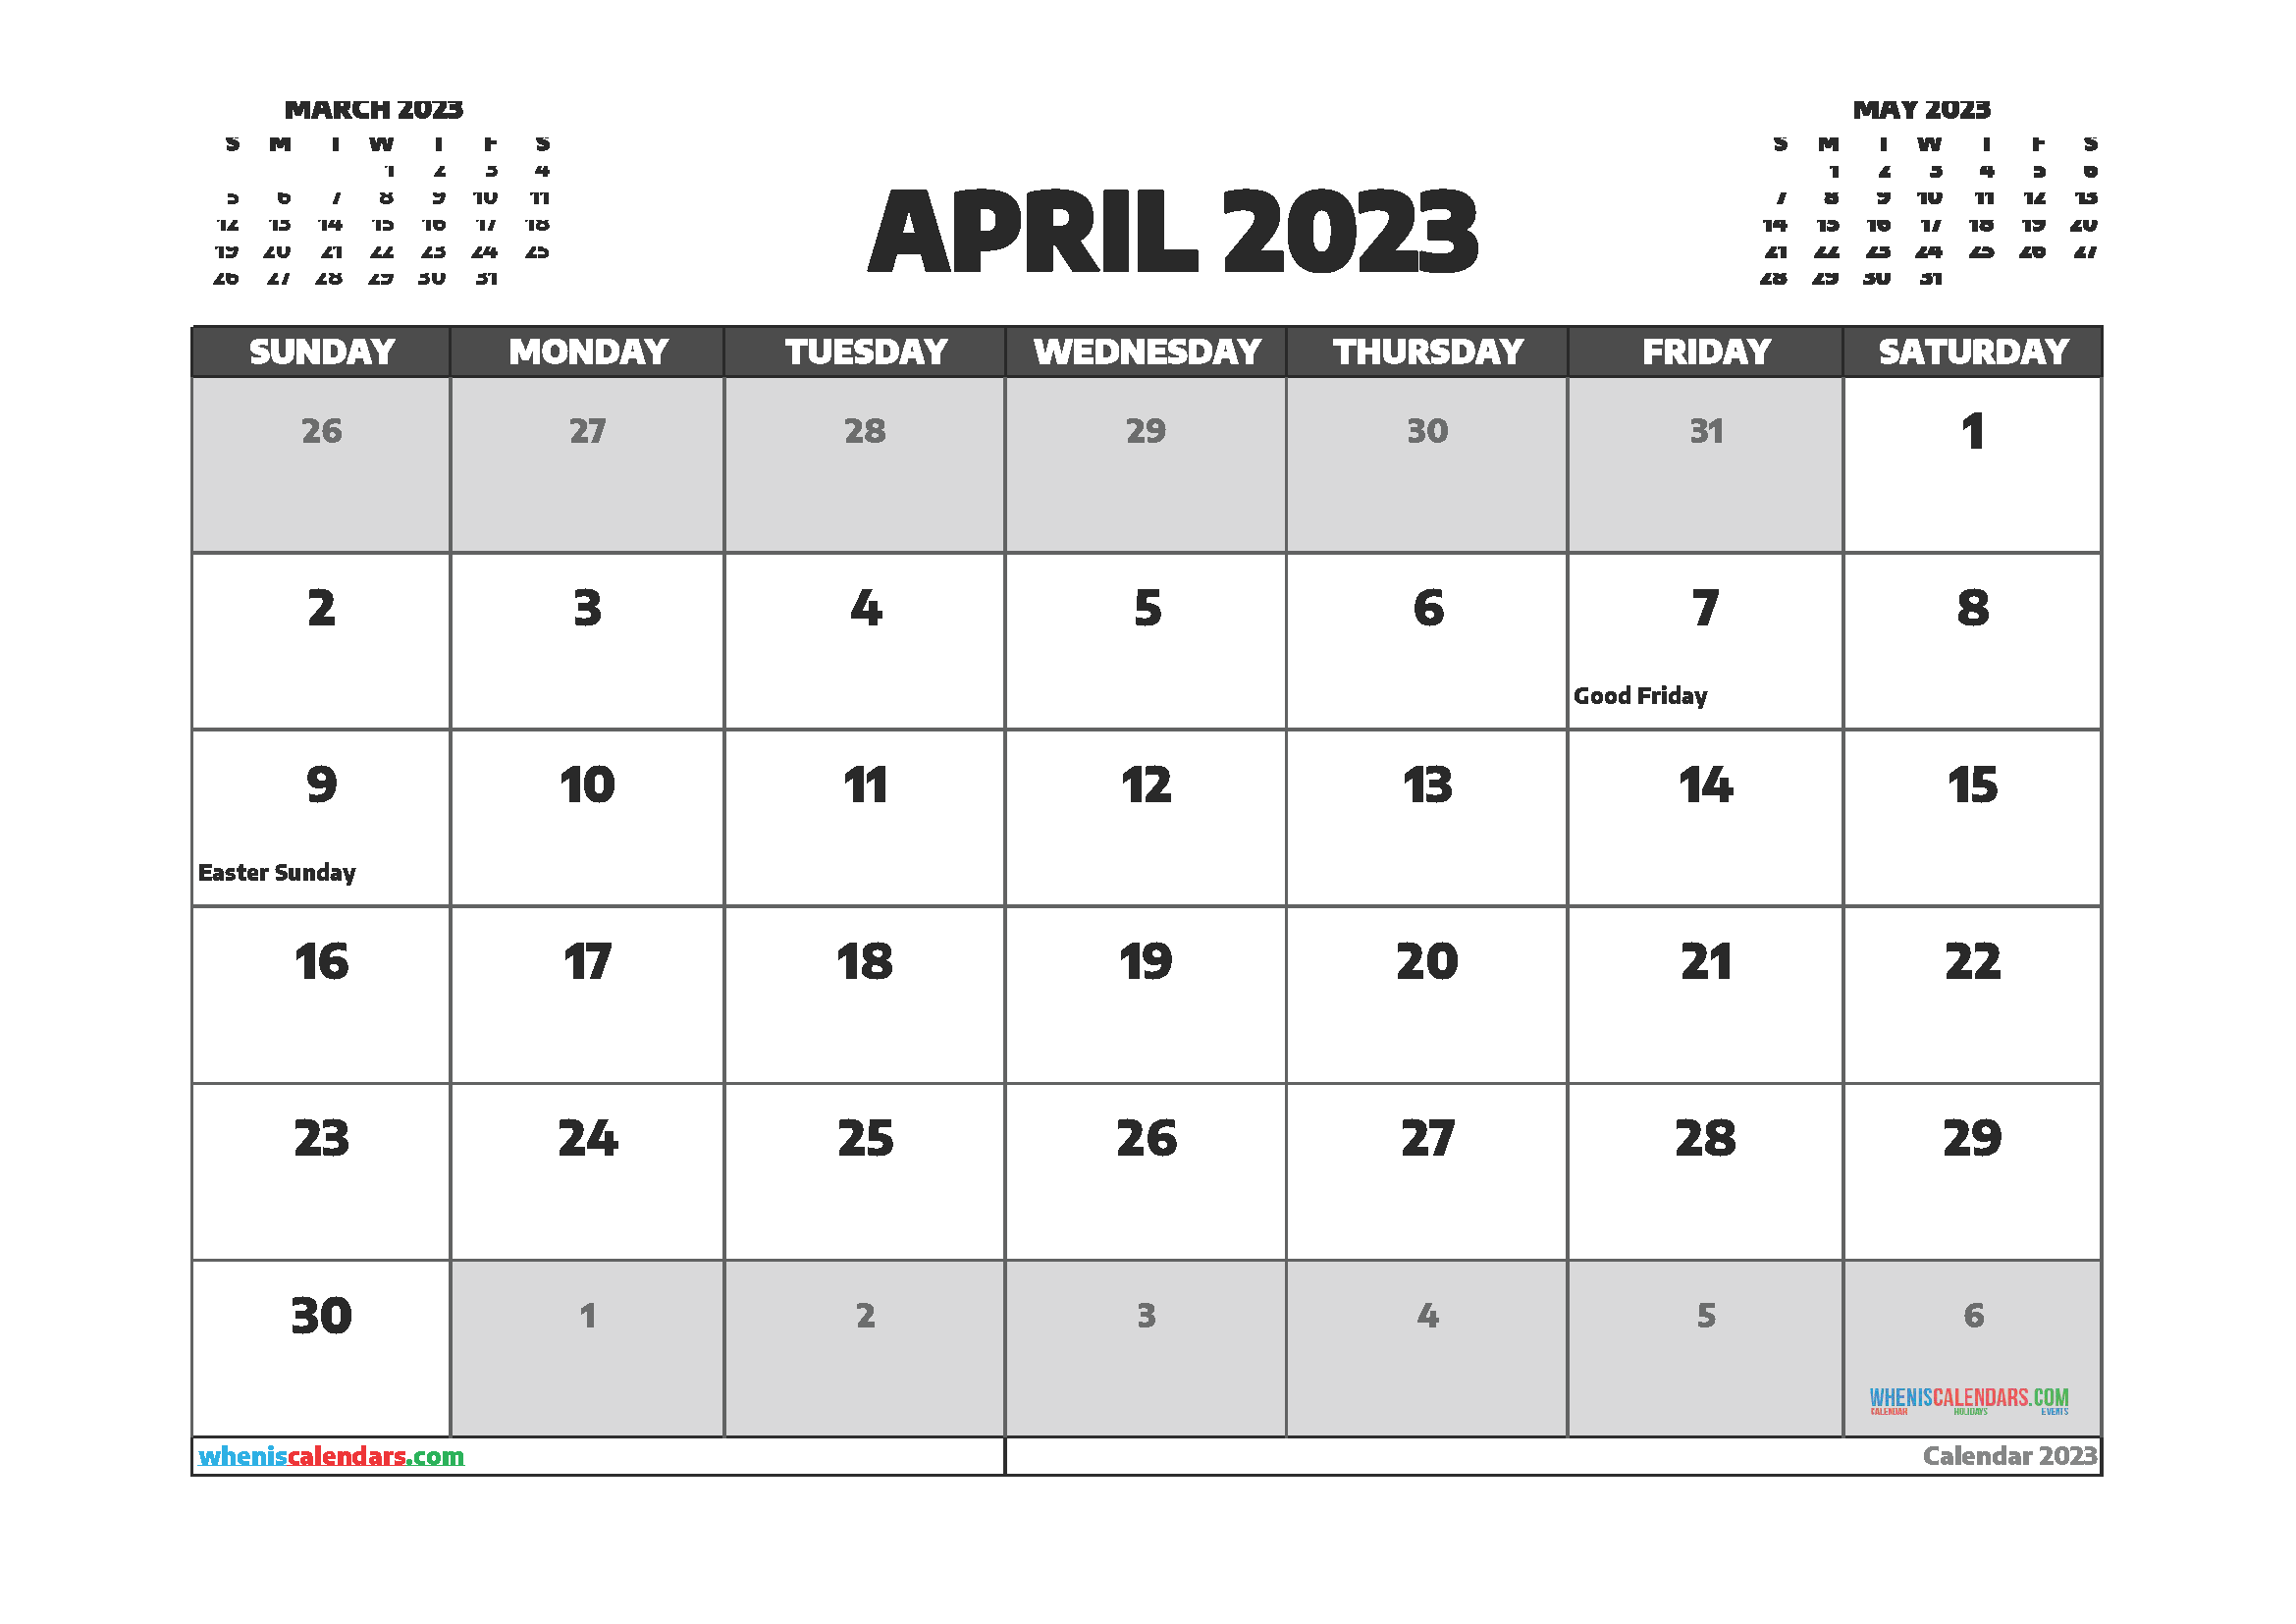 april-calendar-for-2023-calendar-2023-with-federal-holidays